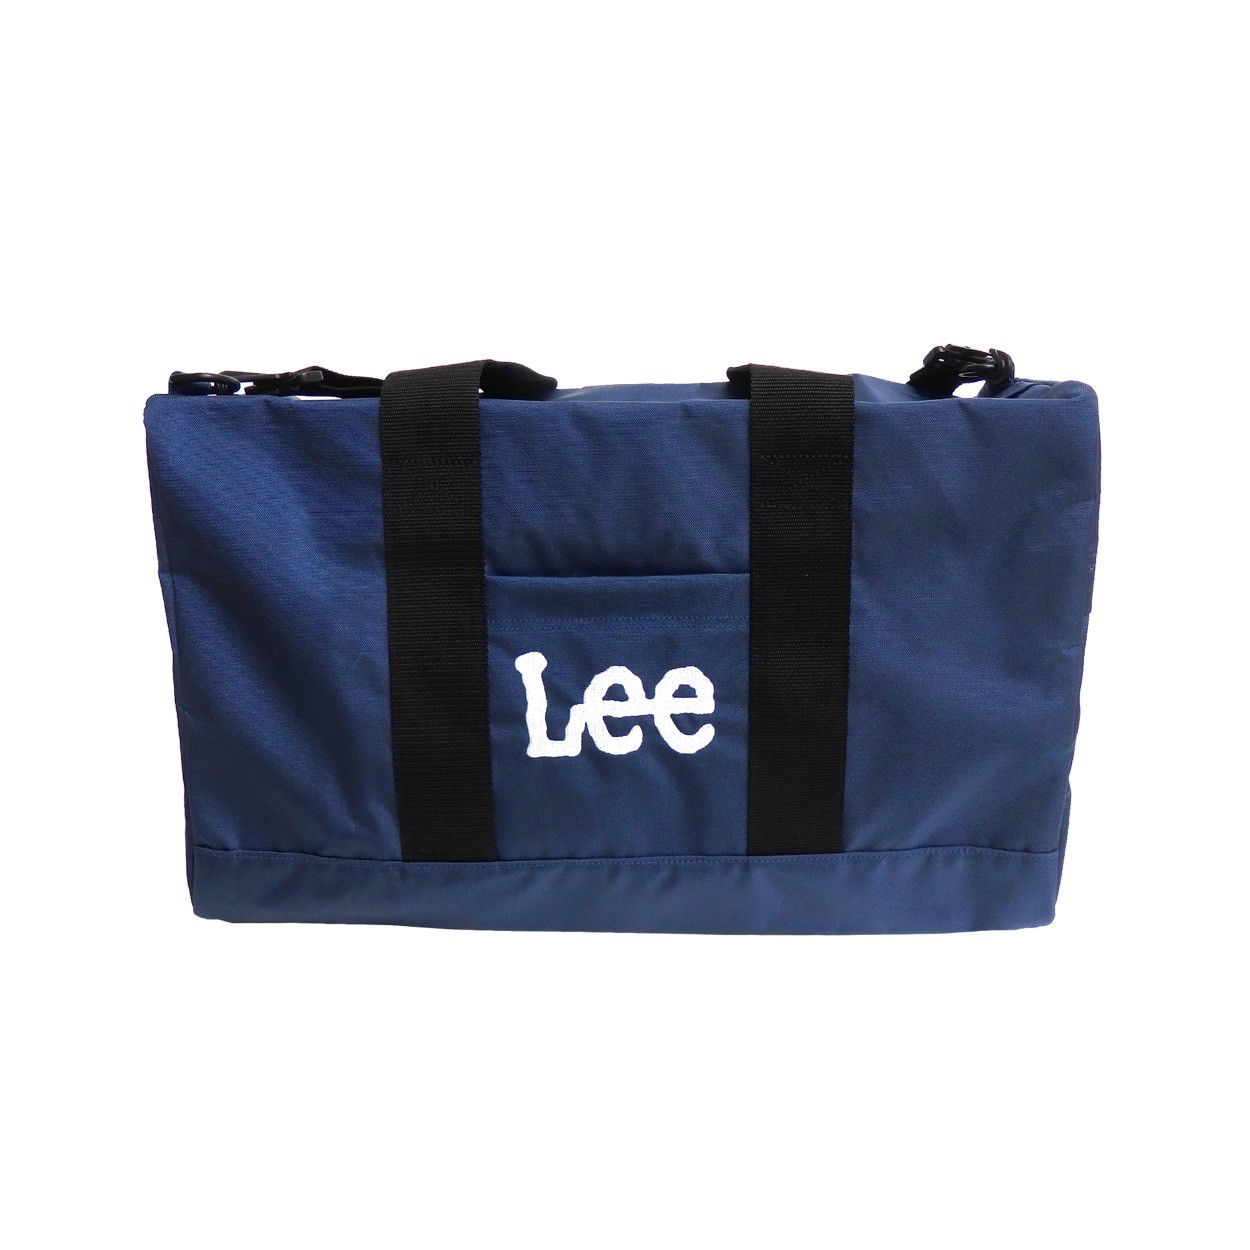 Lee ボストンバッグ リー ショルダーバッグ ロゴ 刺繍 2way バッグ ショルダー紐付き メンズ 鞄 レディース デイパック LEE-029